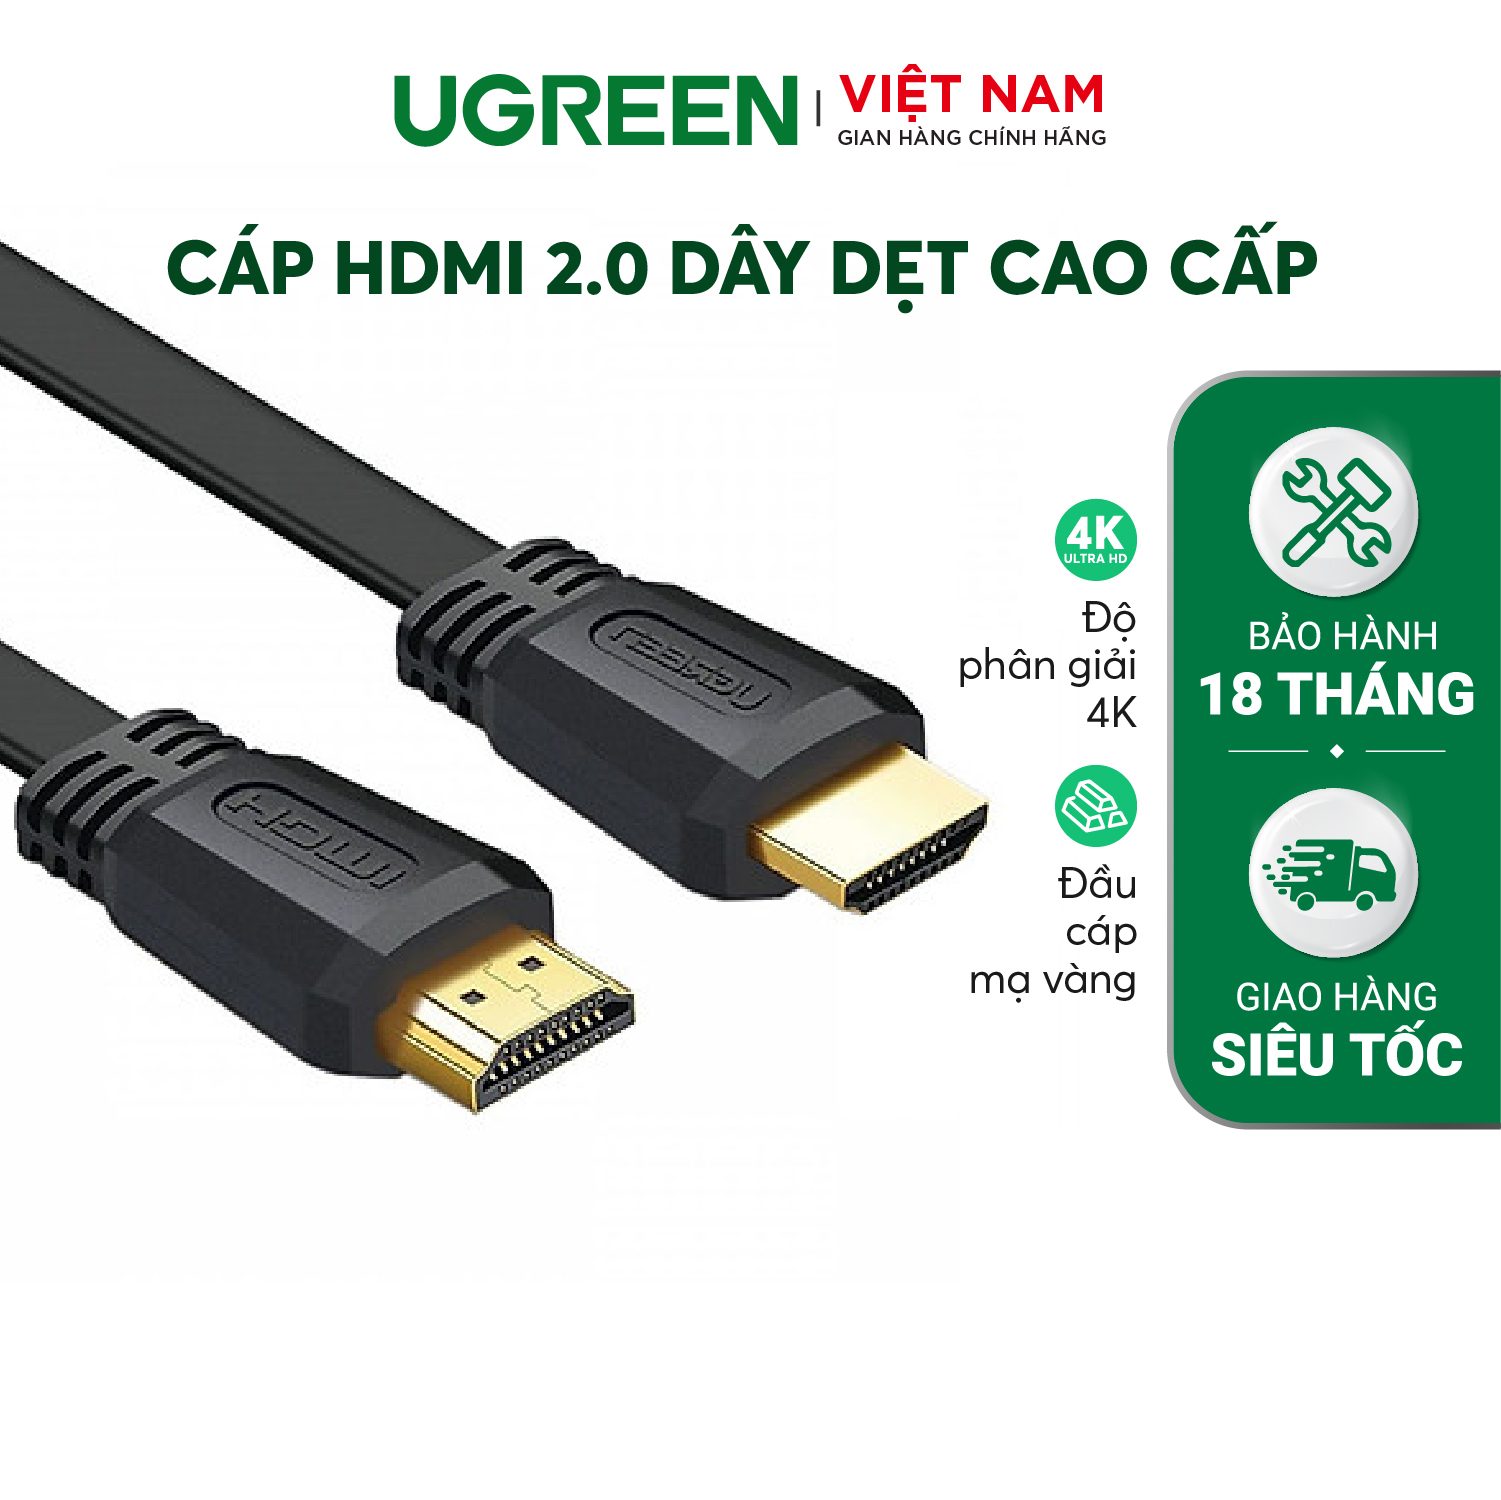 Hình ảnh Ugreen 50819 HDMI 2.0 FLAT CABLE ED015 - Hàng Chính Hãng